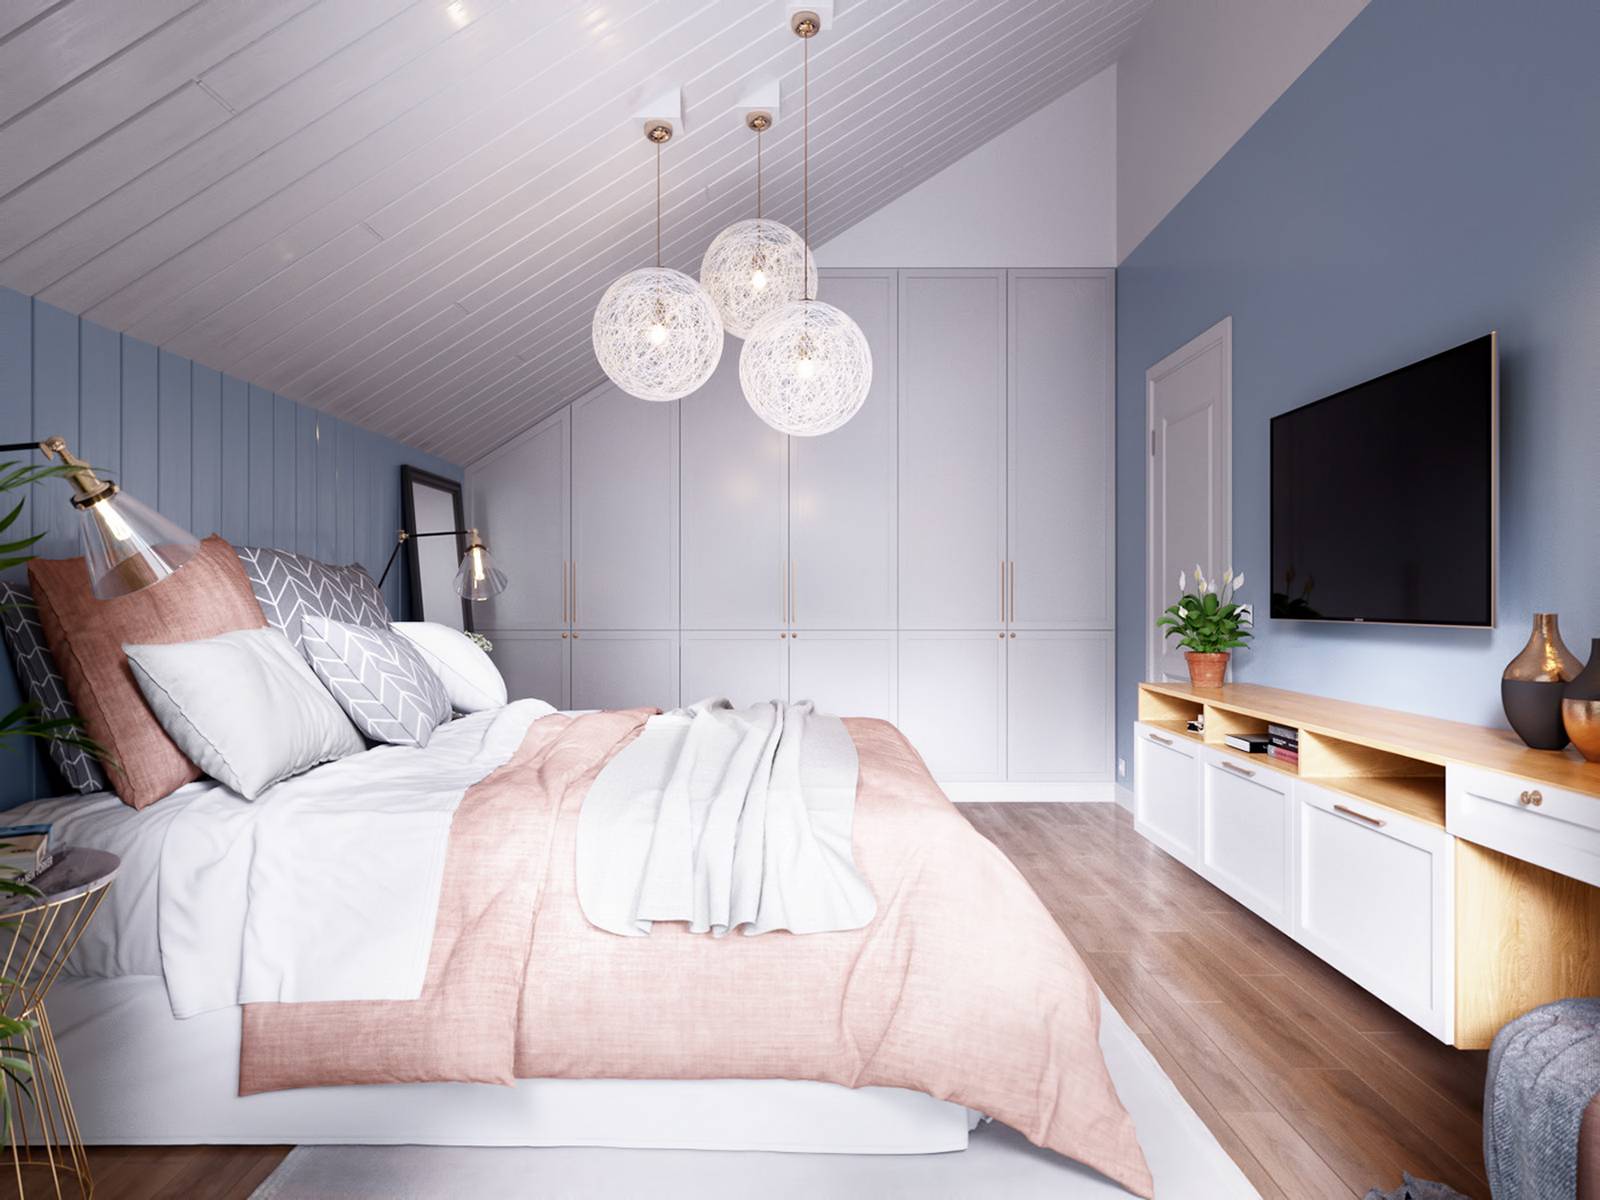 Gam màu xanh lam của bức tường tương phản với trần nhà sơn màu trắng tươi sáng. Bộ chăn ga gối màu hồng đất cho giường ngủ của bố mẹ sự ấm áp, nhẹ nhàng.